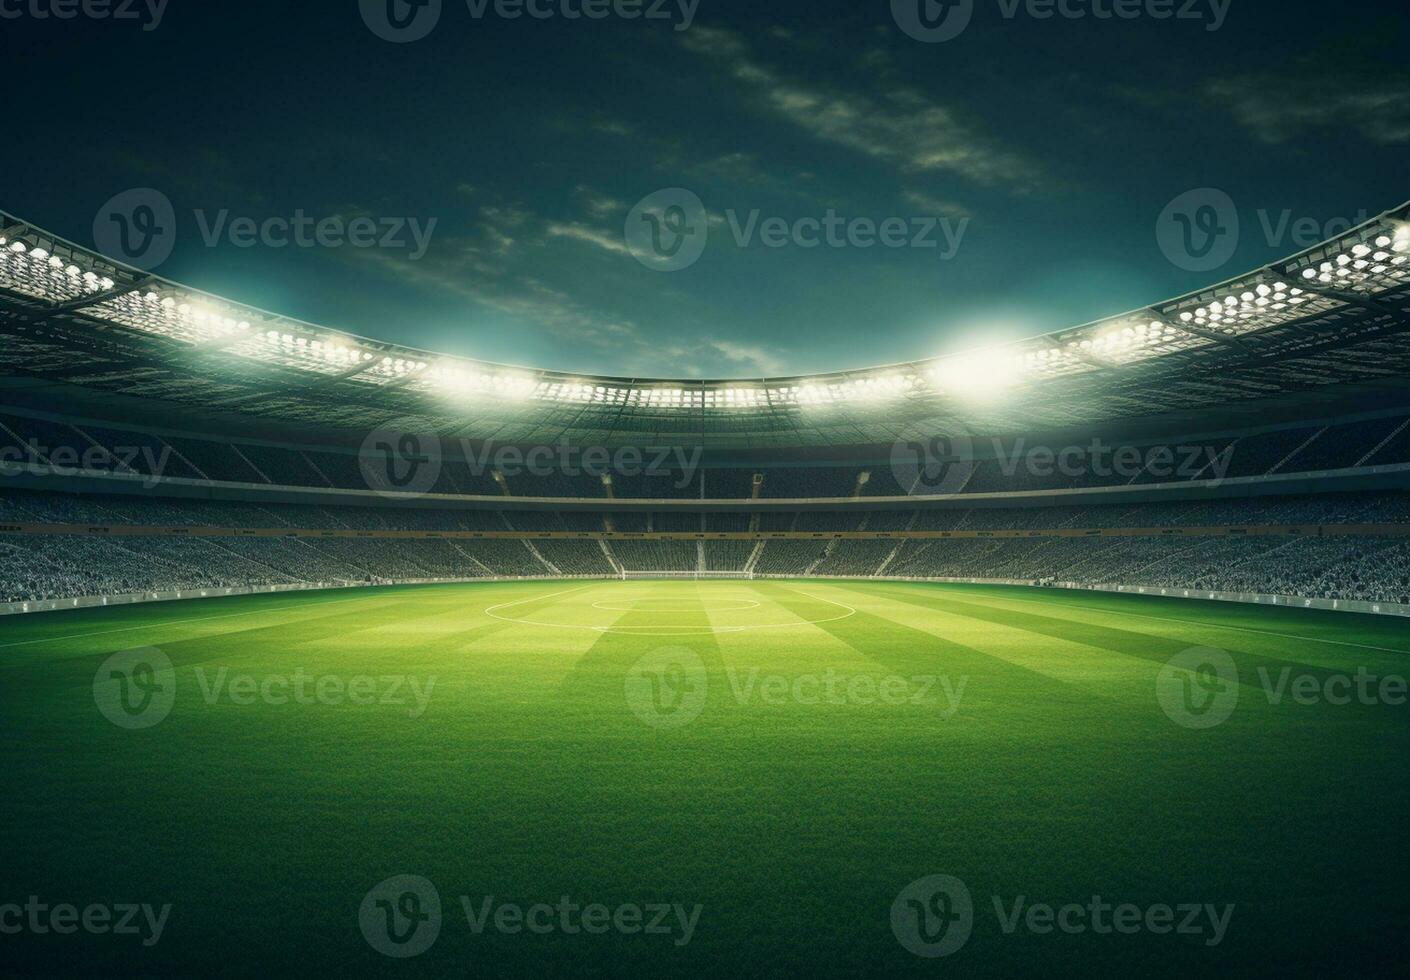 foto de un fútbol estadio a noche con estadio ligero. el estadio estaba hecho en 3d sin utilizando existente referencias